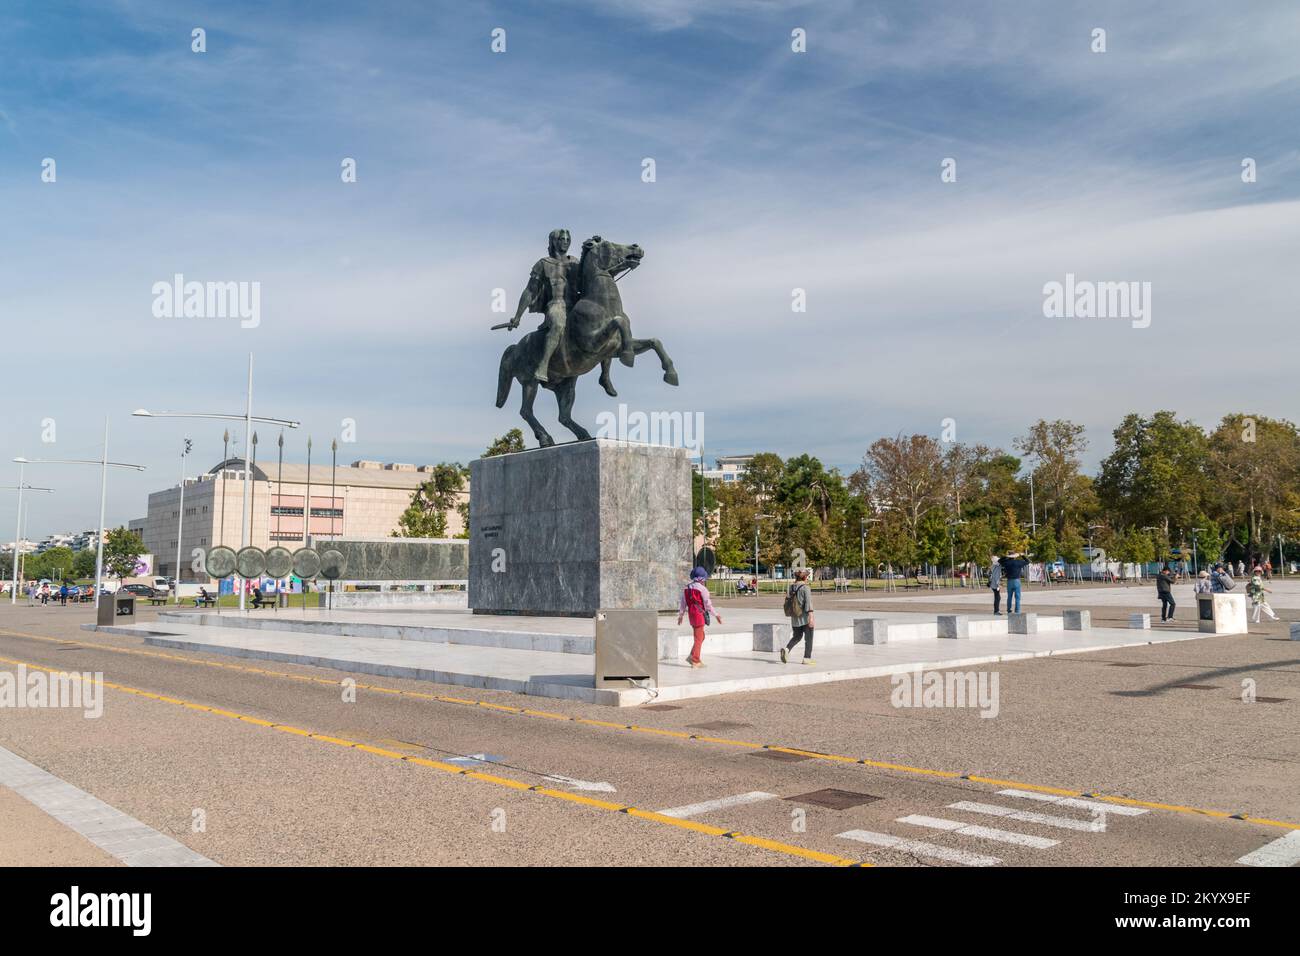 Salonicco, Grecia - 29 settembre 2022: Statua equestre di Alessandro III di Macedone, re dell'antico regno greco di Macedone sul lungomare. Foto Stock